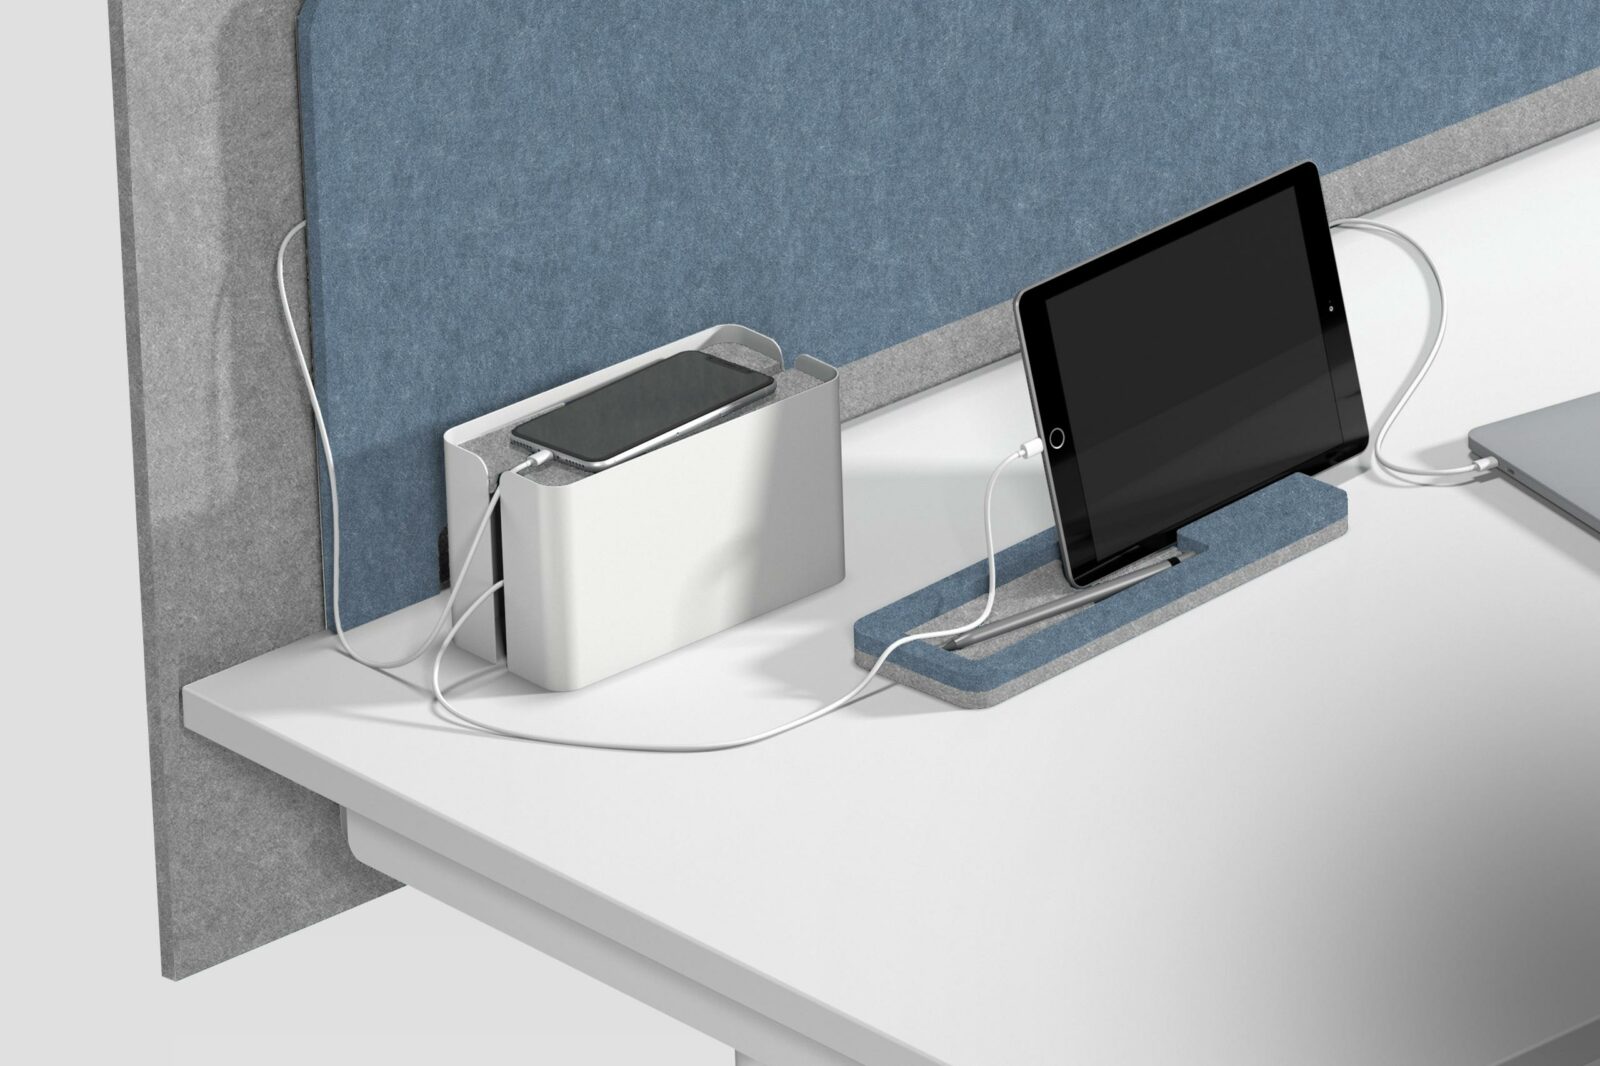 Detailansicht zeigt Akustikwand aus zwei Lagen mit integrierten USB Anschlüssen und Verkabelung zu einem Mobiltelefon, Tablet und einem Laptop